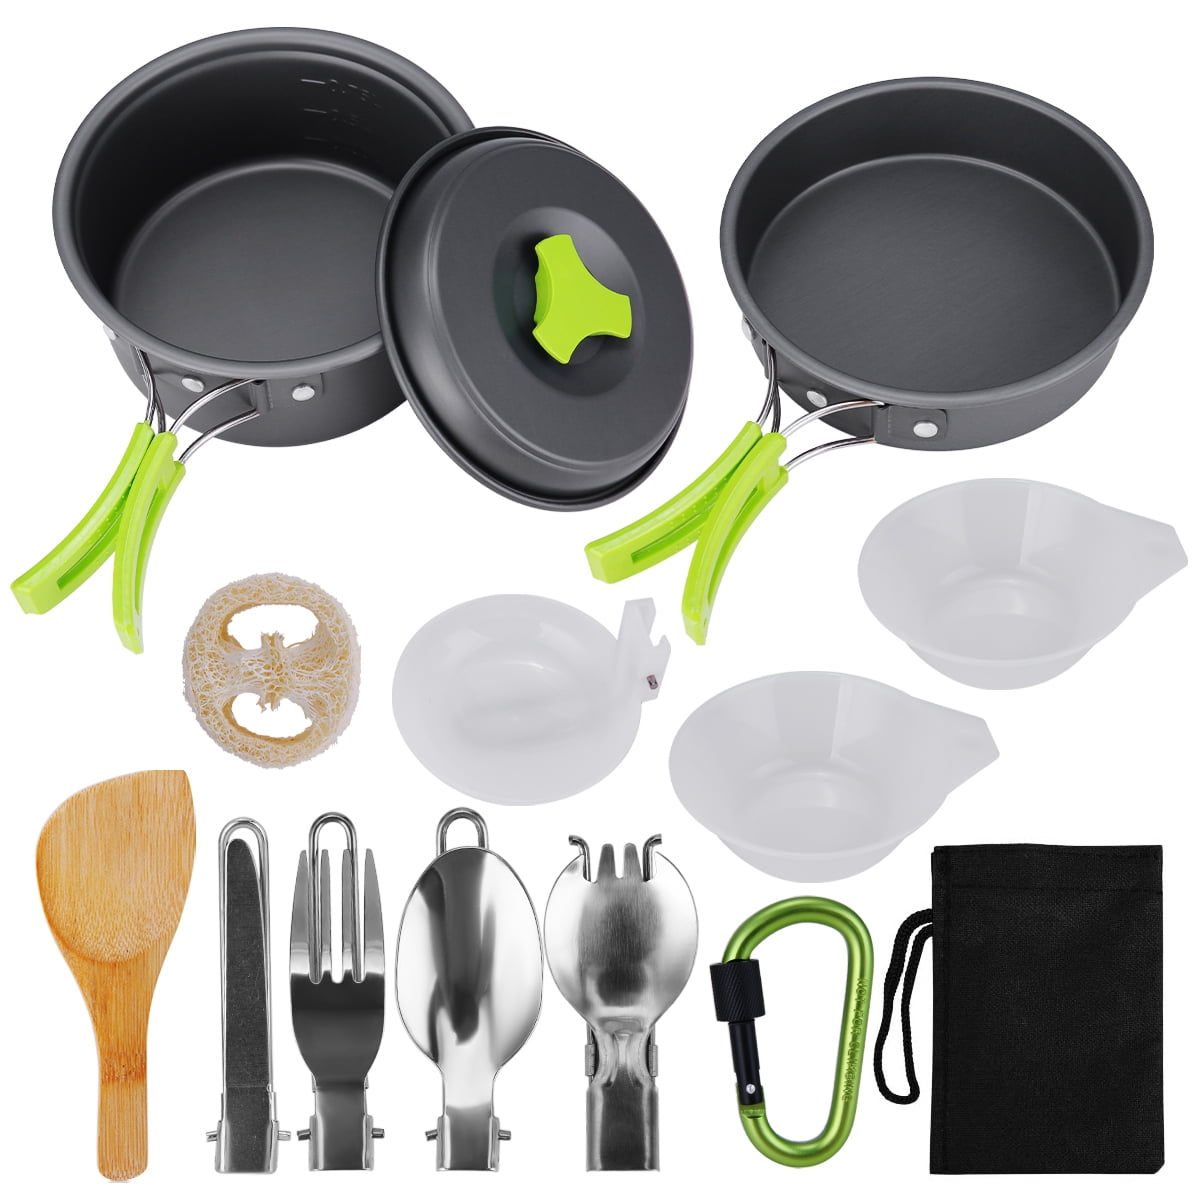 Details about   Outdoor Aluminium Pot Pan Spoon Spork Stove Set Camping Hiking Cooking Set bag 